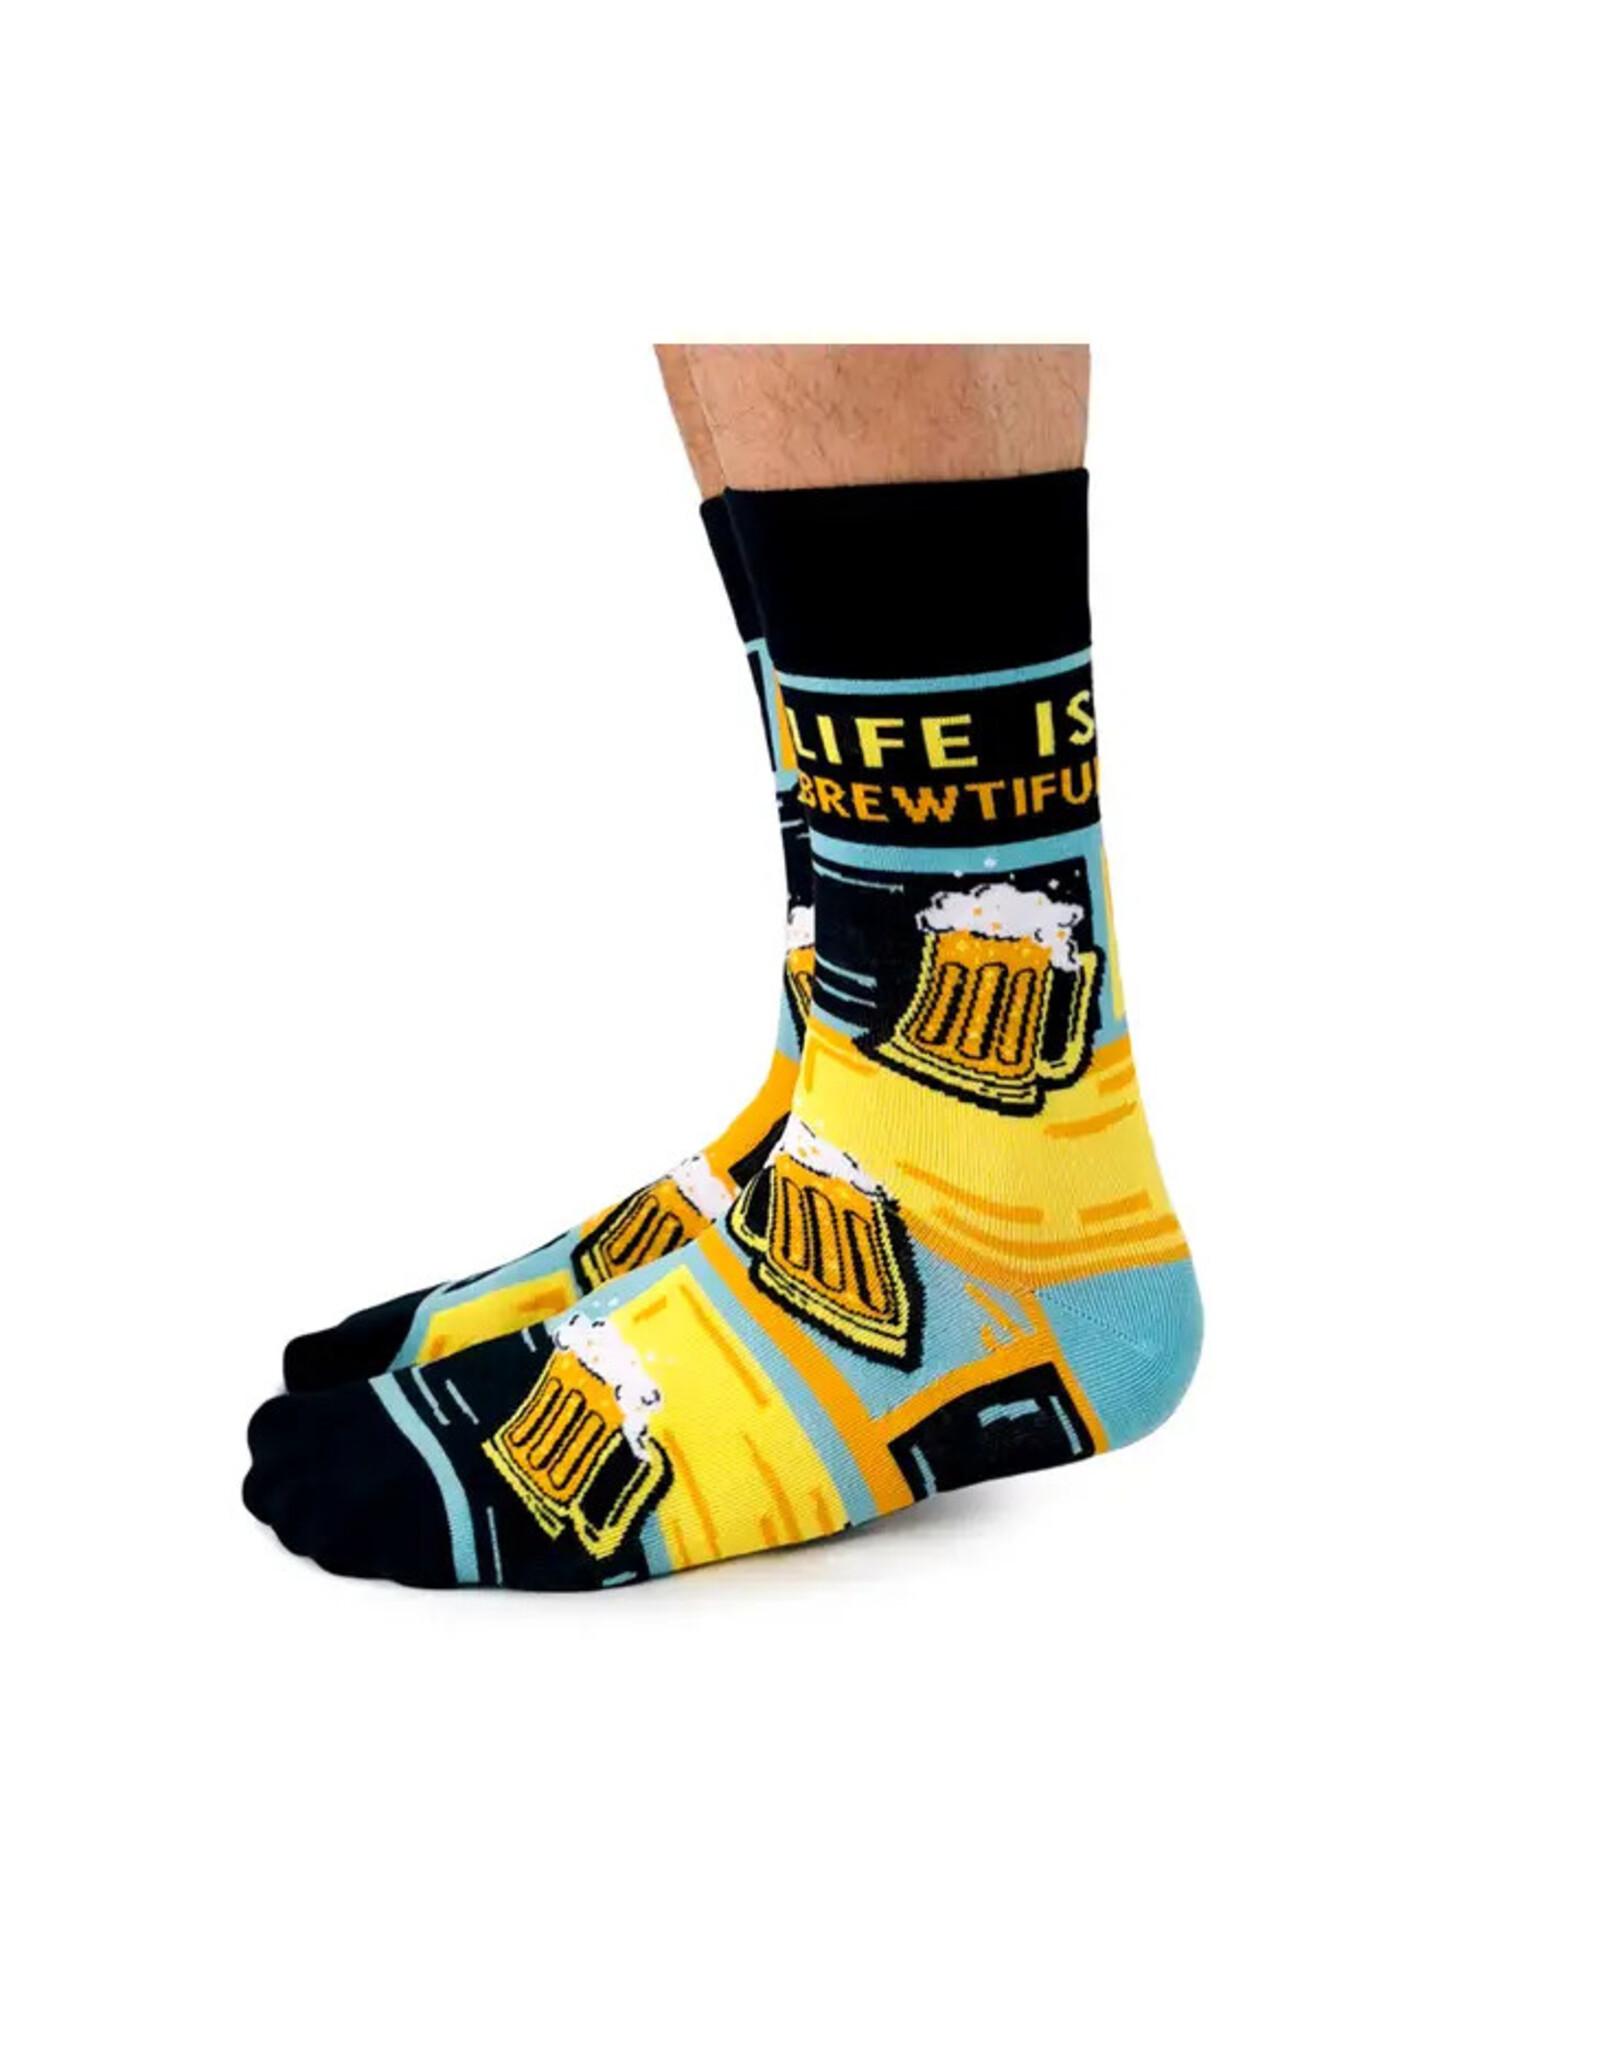 Uptown Socks Life is Brewtiful Socks - Uptown Sox